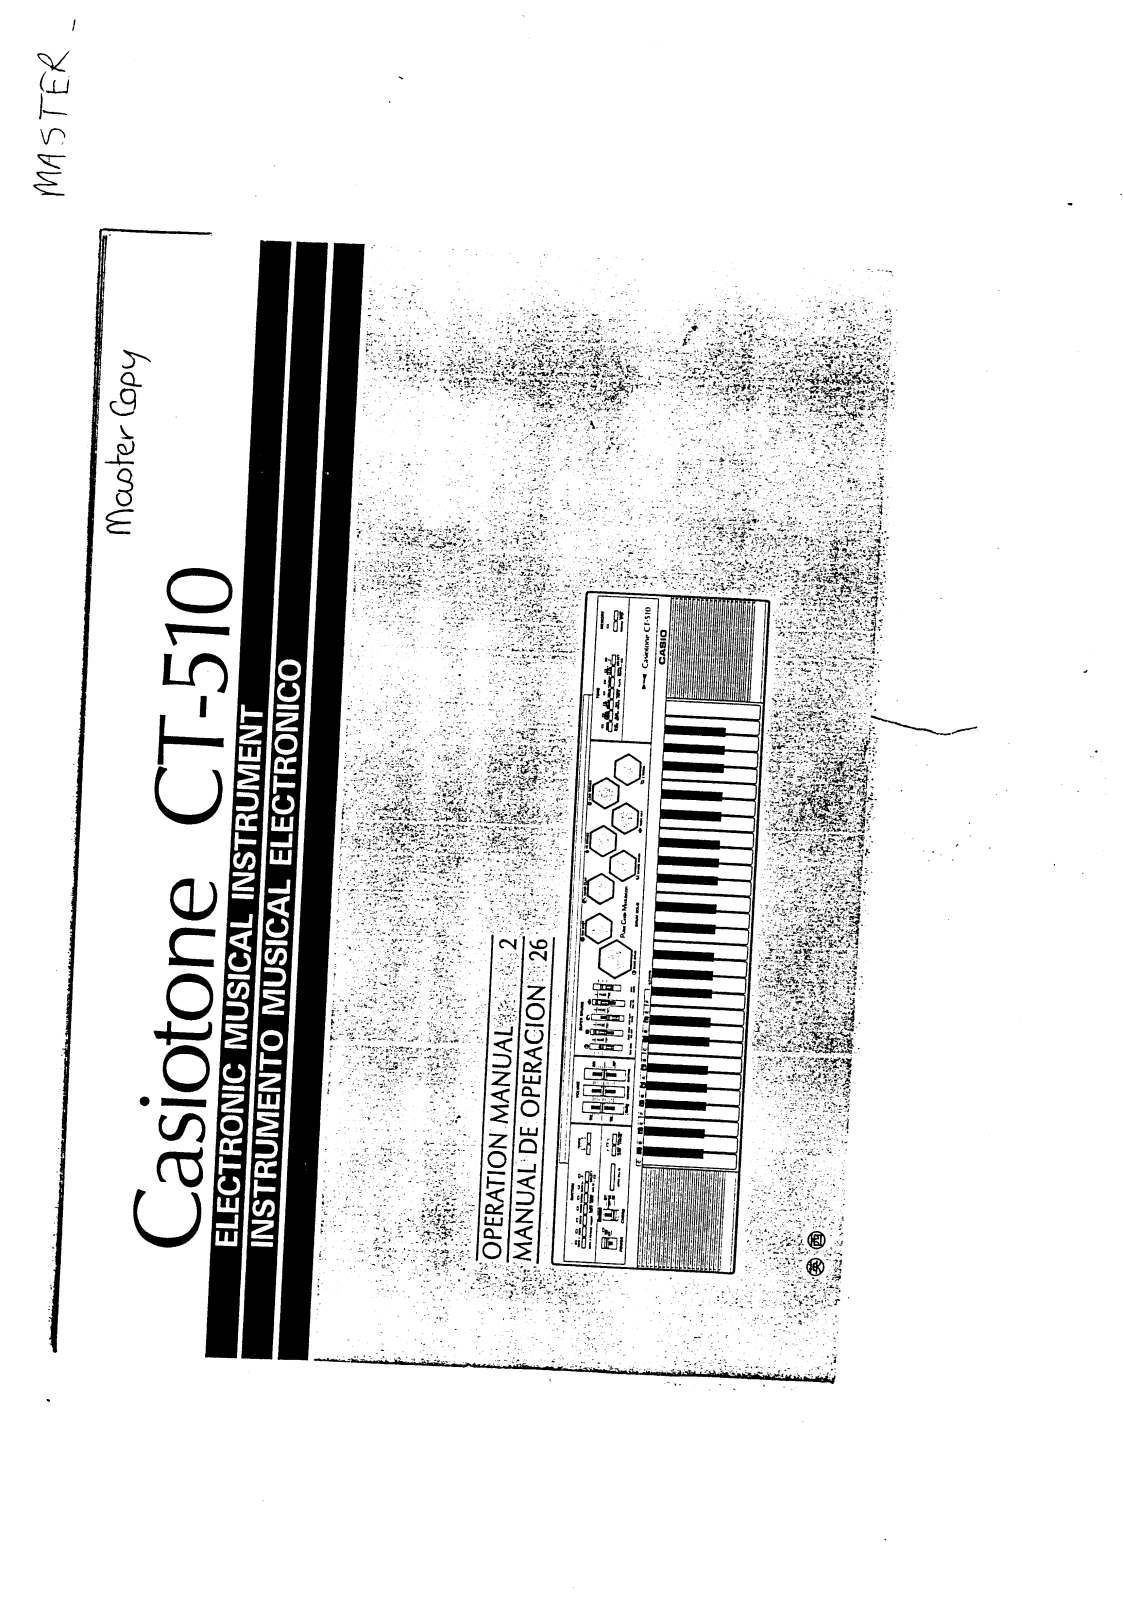 Casio CT-510 User Manual